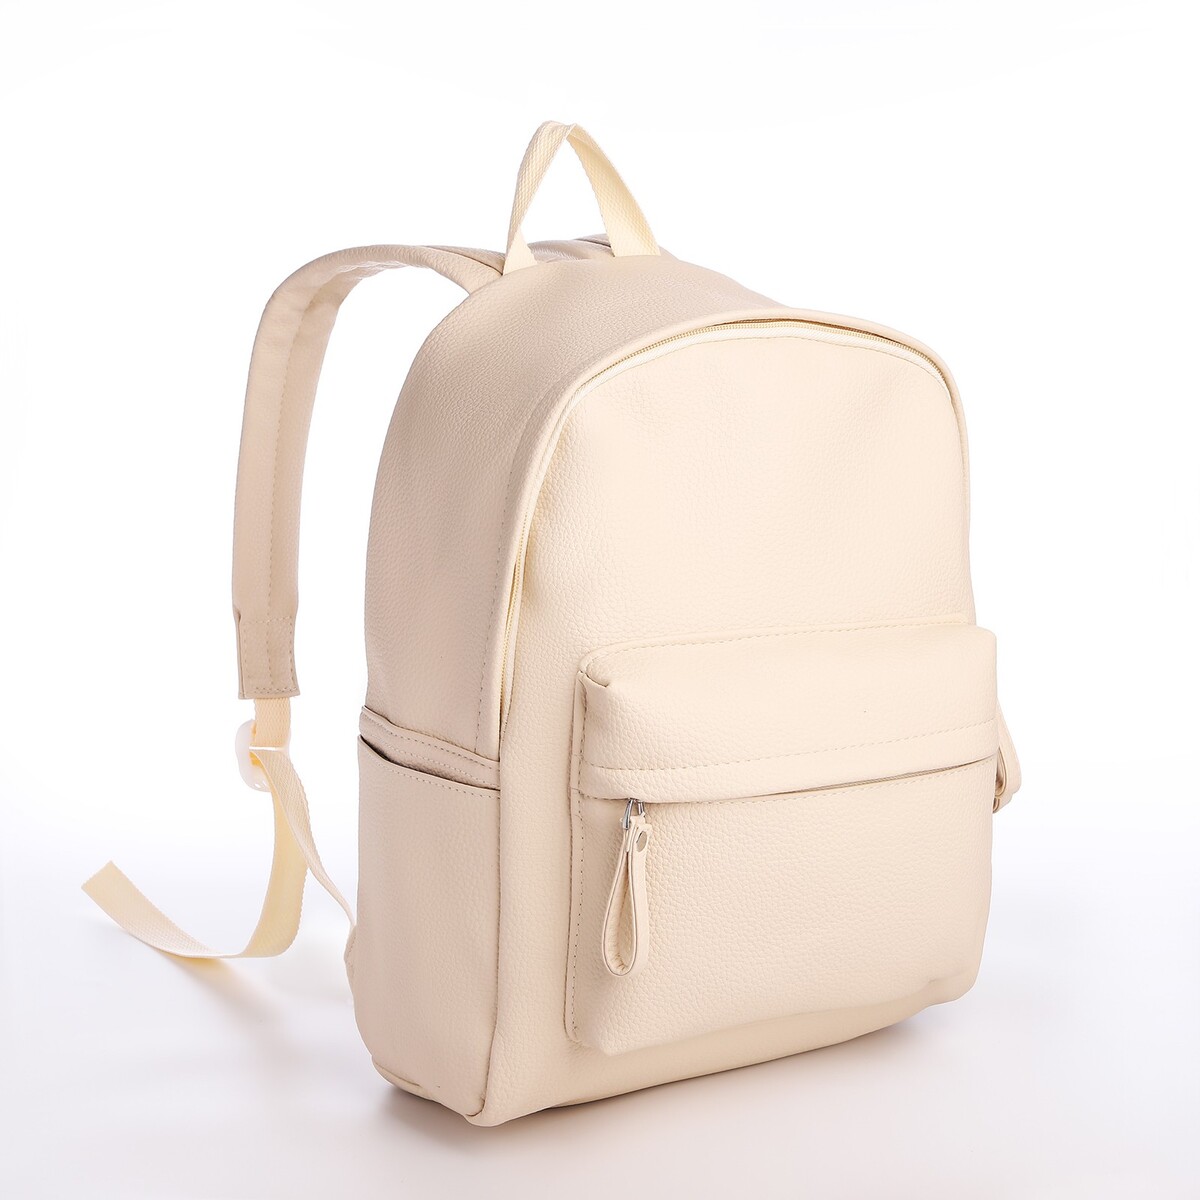 Рюкзак молодежный из искусственной кожи на молнии, 4 кармана, цвет бежевый рюкзак школьный из текстиля 3 кармана белый бежевый